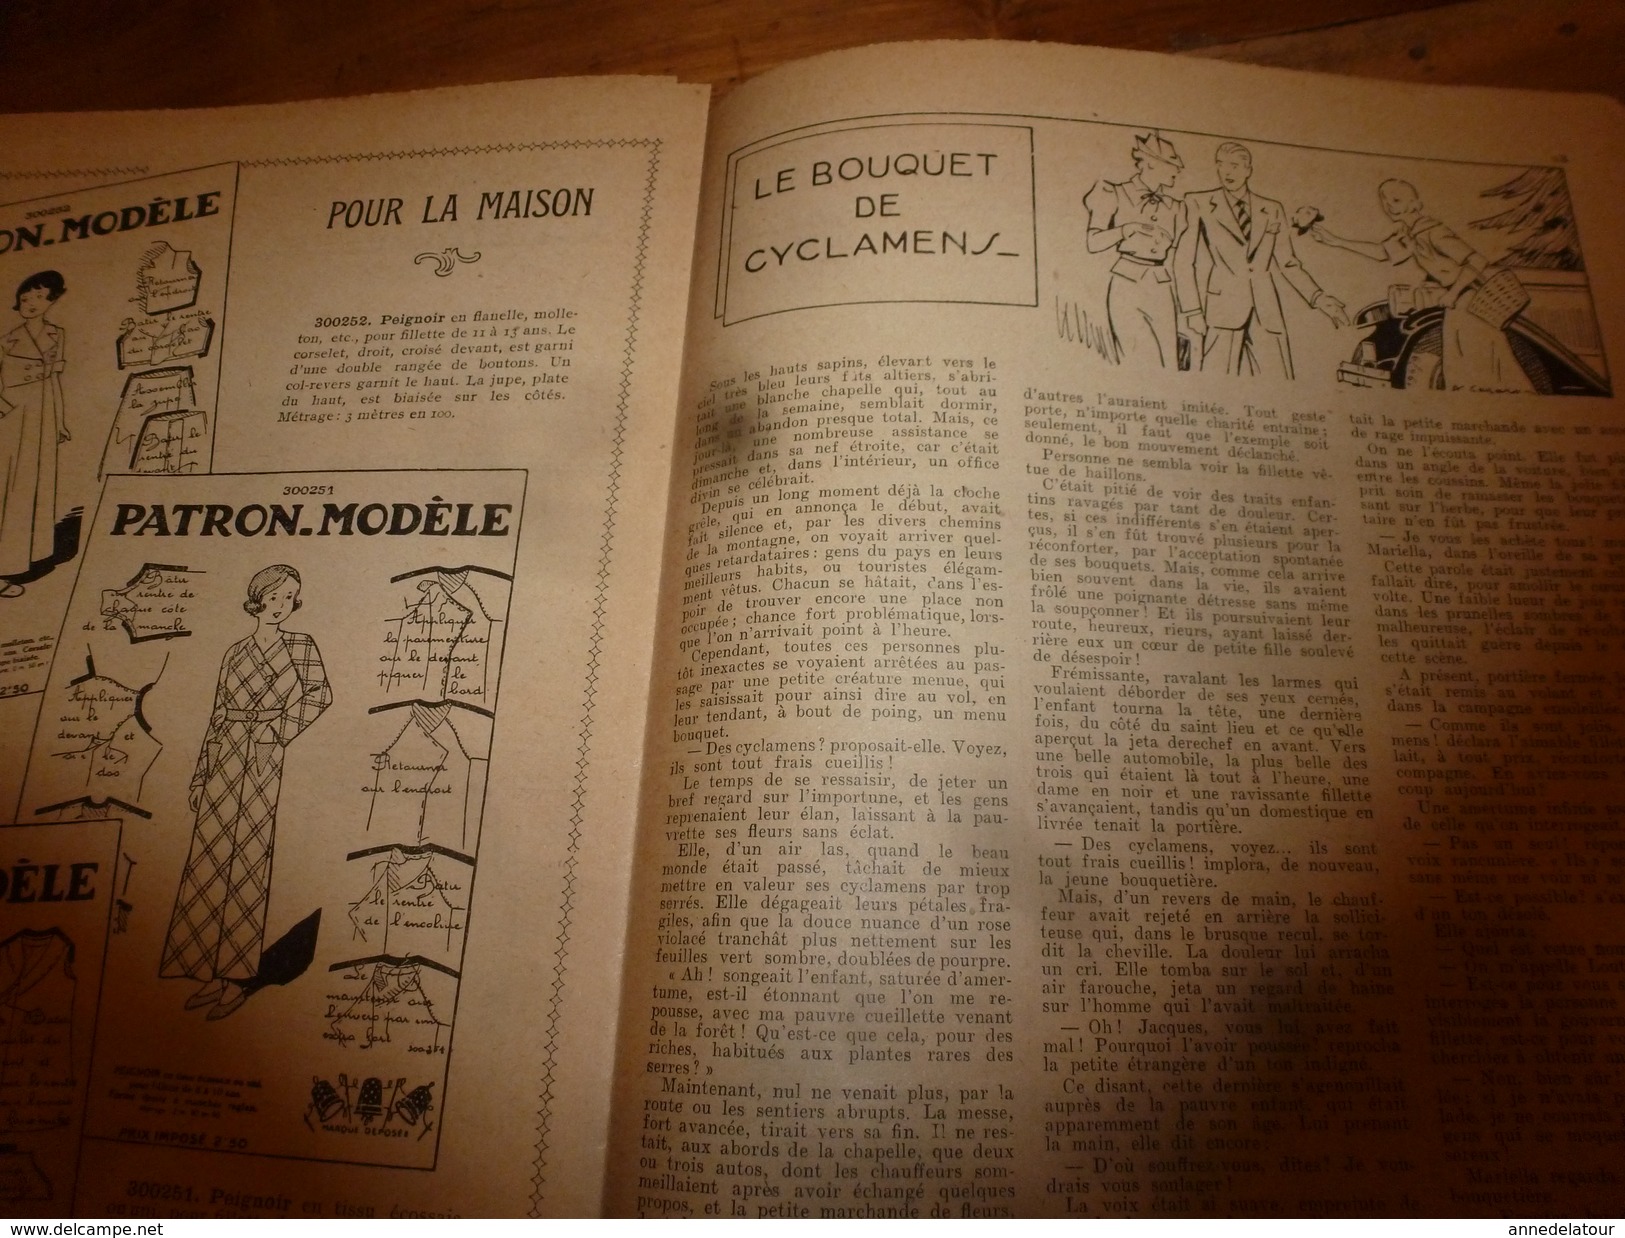 1937 LISETTE:Le violon magique d'Huguette Vorel (texte et dessins de René Louys);Chemisier au tricot pour fillette;etc